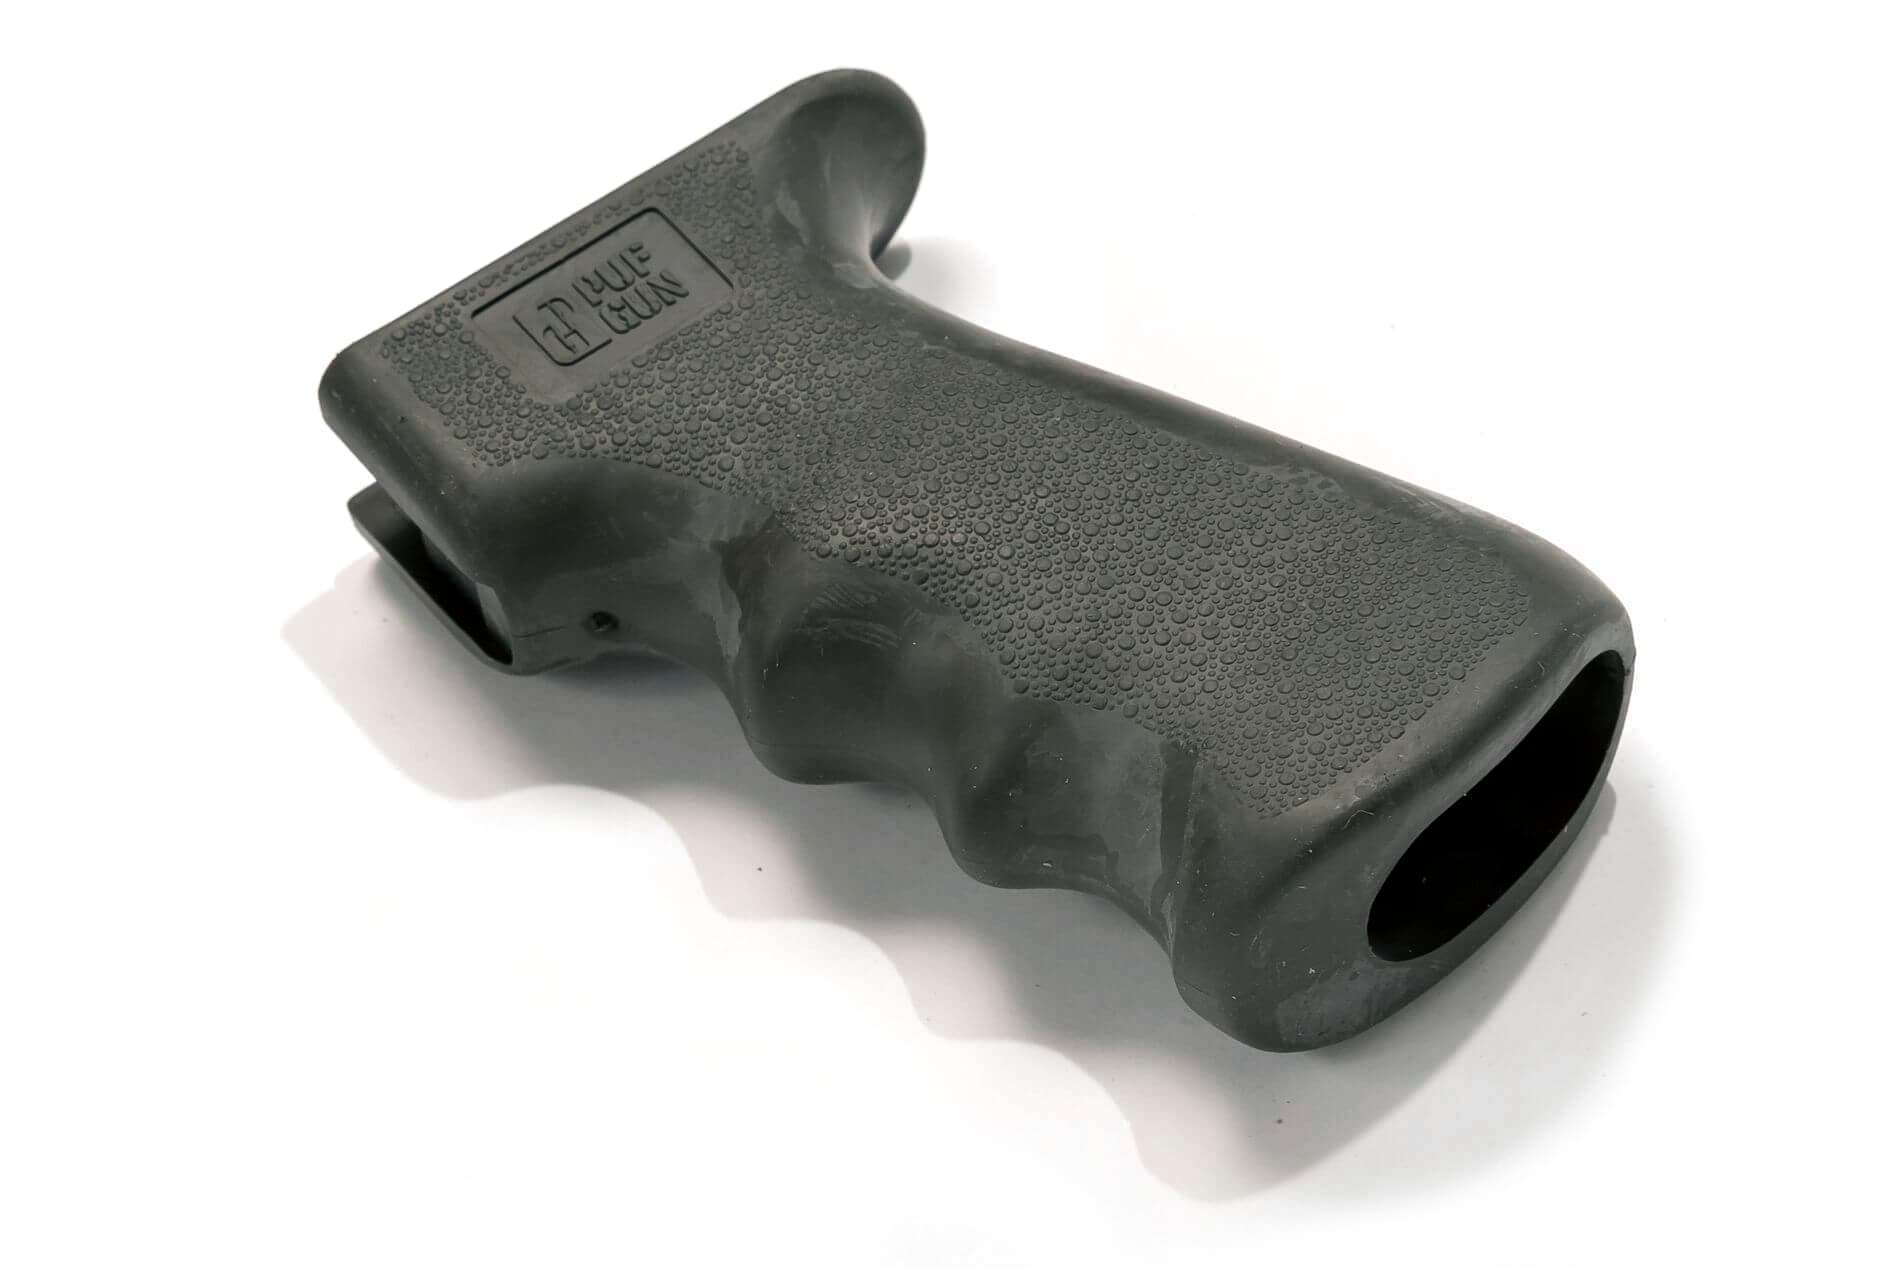 Рукоятка Pufgun Grip SG-A2/Kh, для Сайга, анатомическая, прорезиненная, хаки